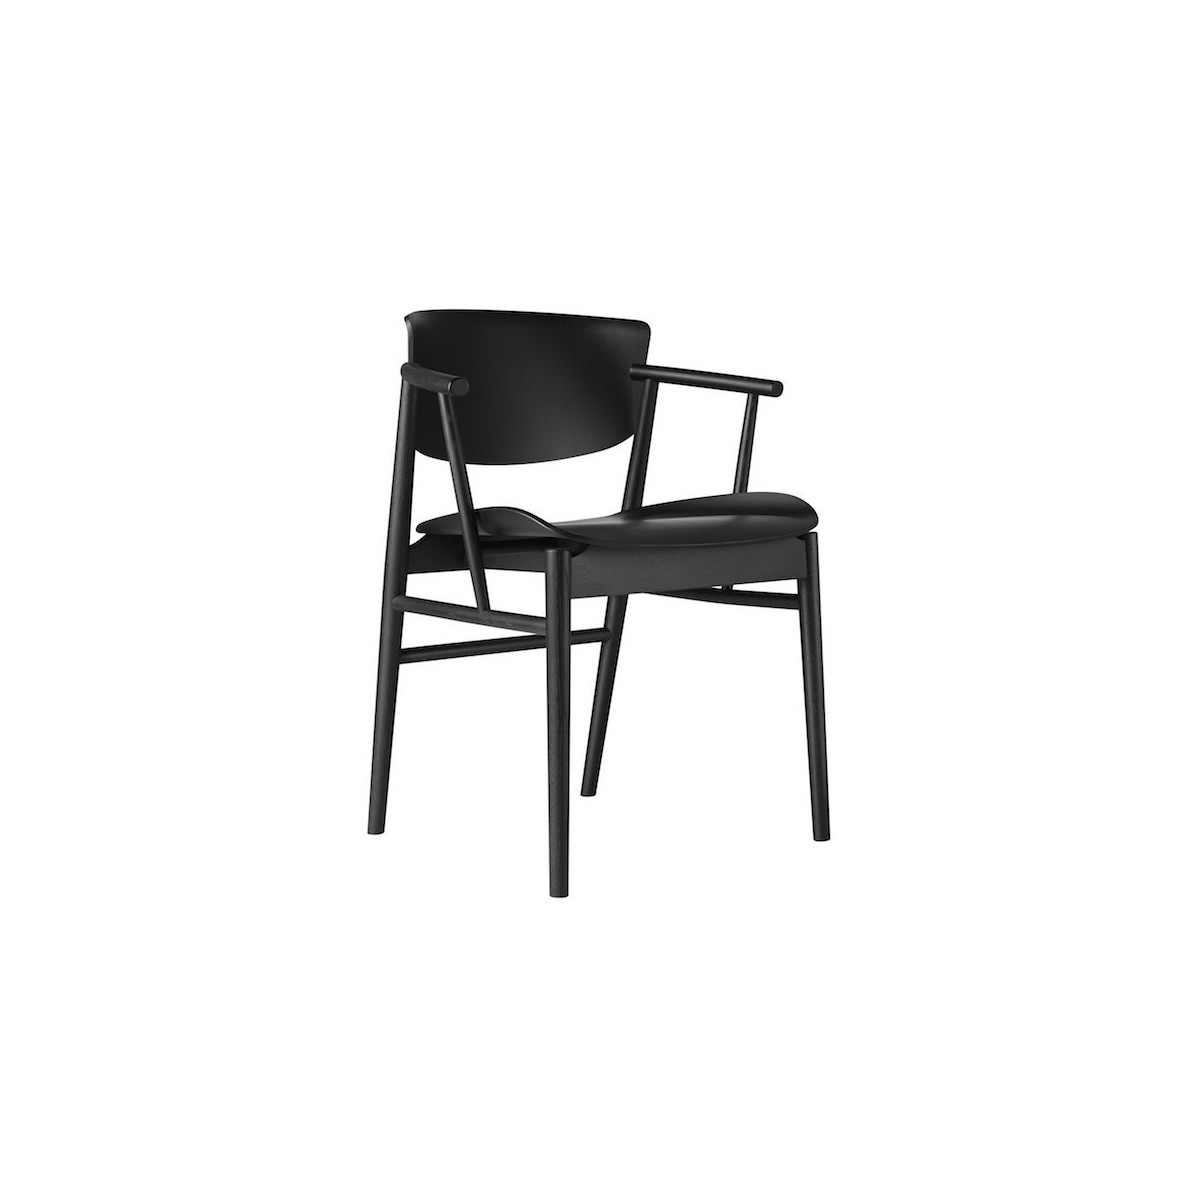 N01 chair - black oak